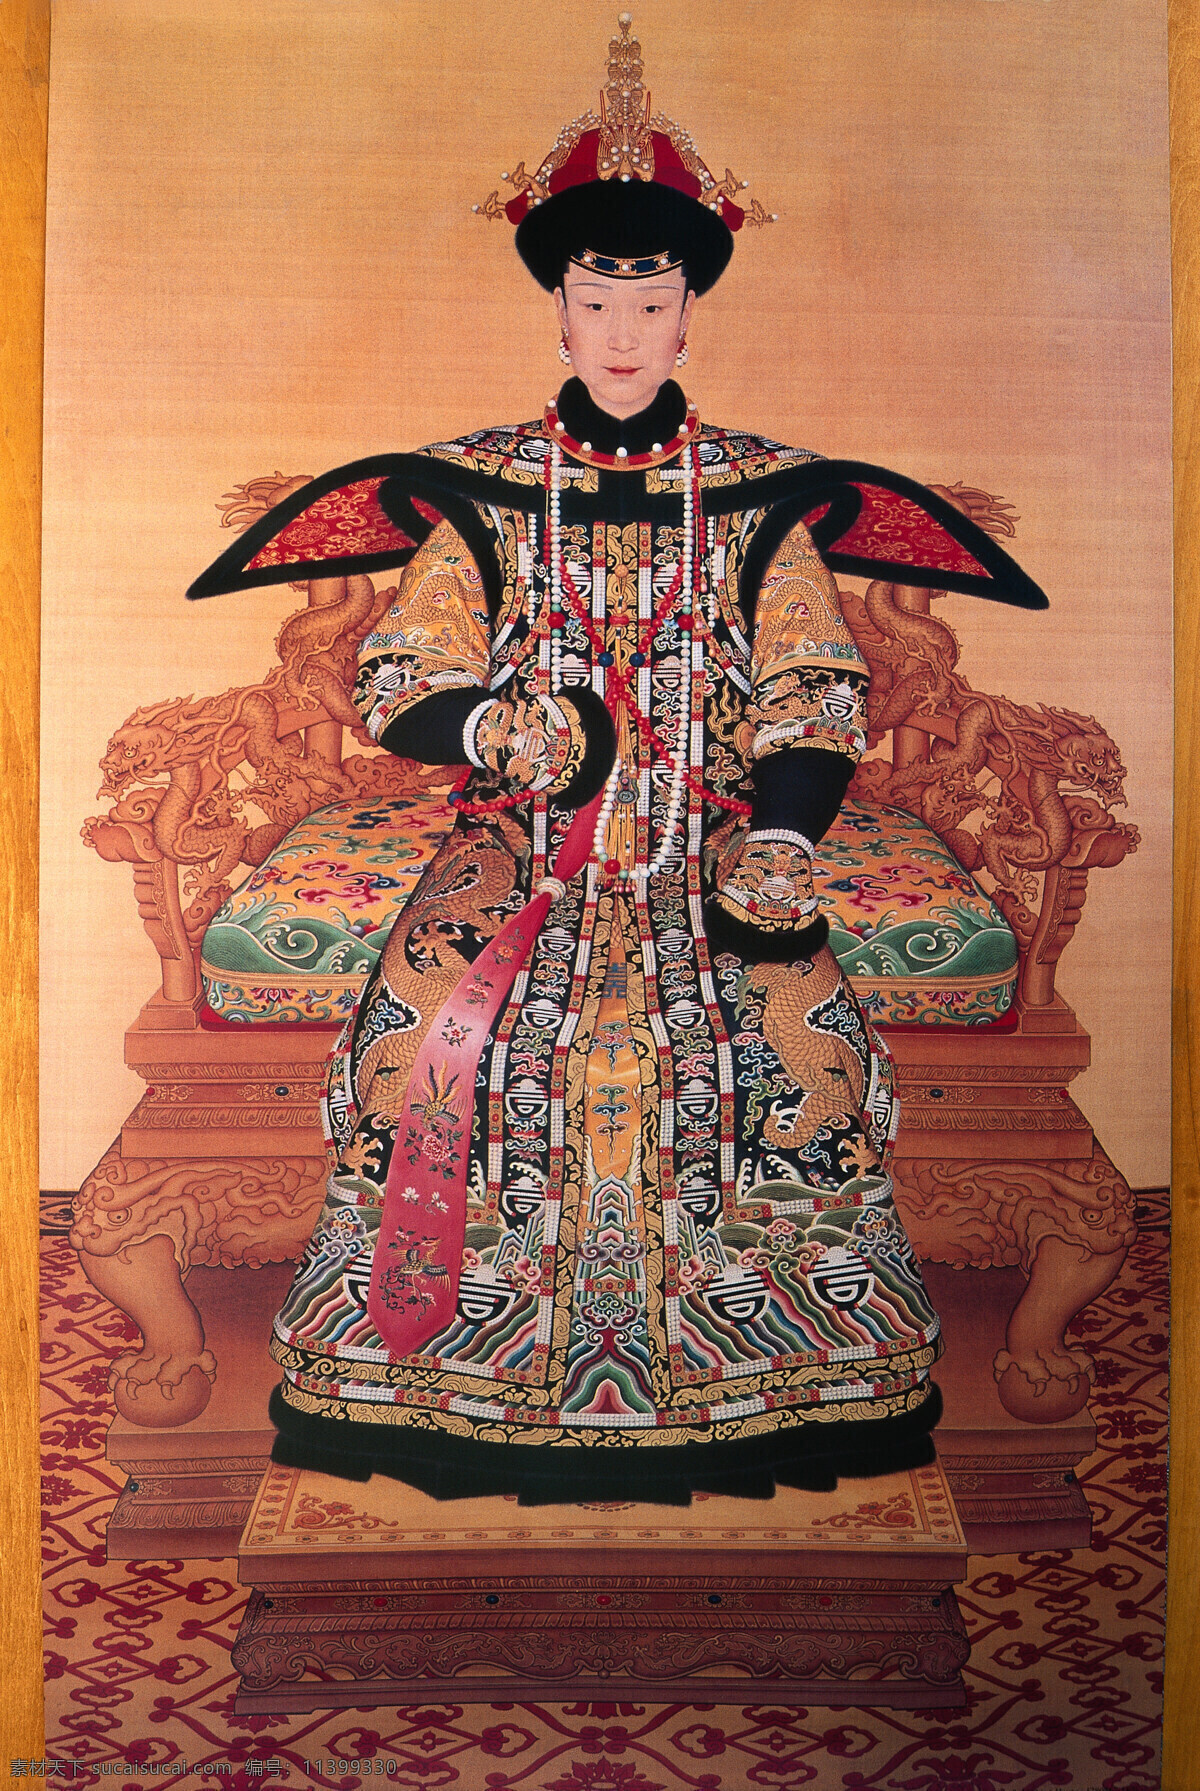 中国 古代 女皇 画像 武则天 古代女皇 皇帝 古代皇帝 皇帝画像 人物 人物插画 古代人物 人物图片 摄影图库 建筑设计 环境家居